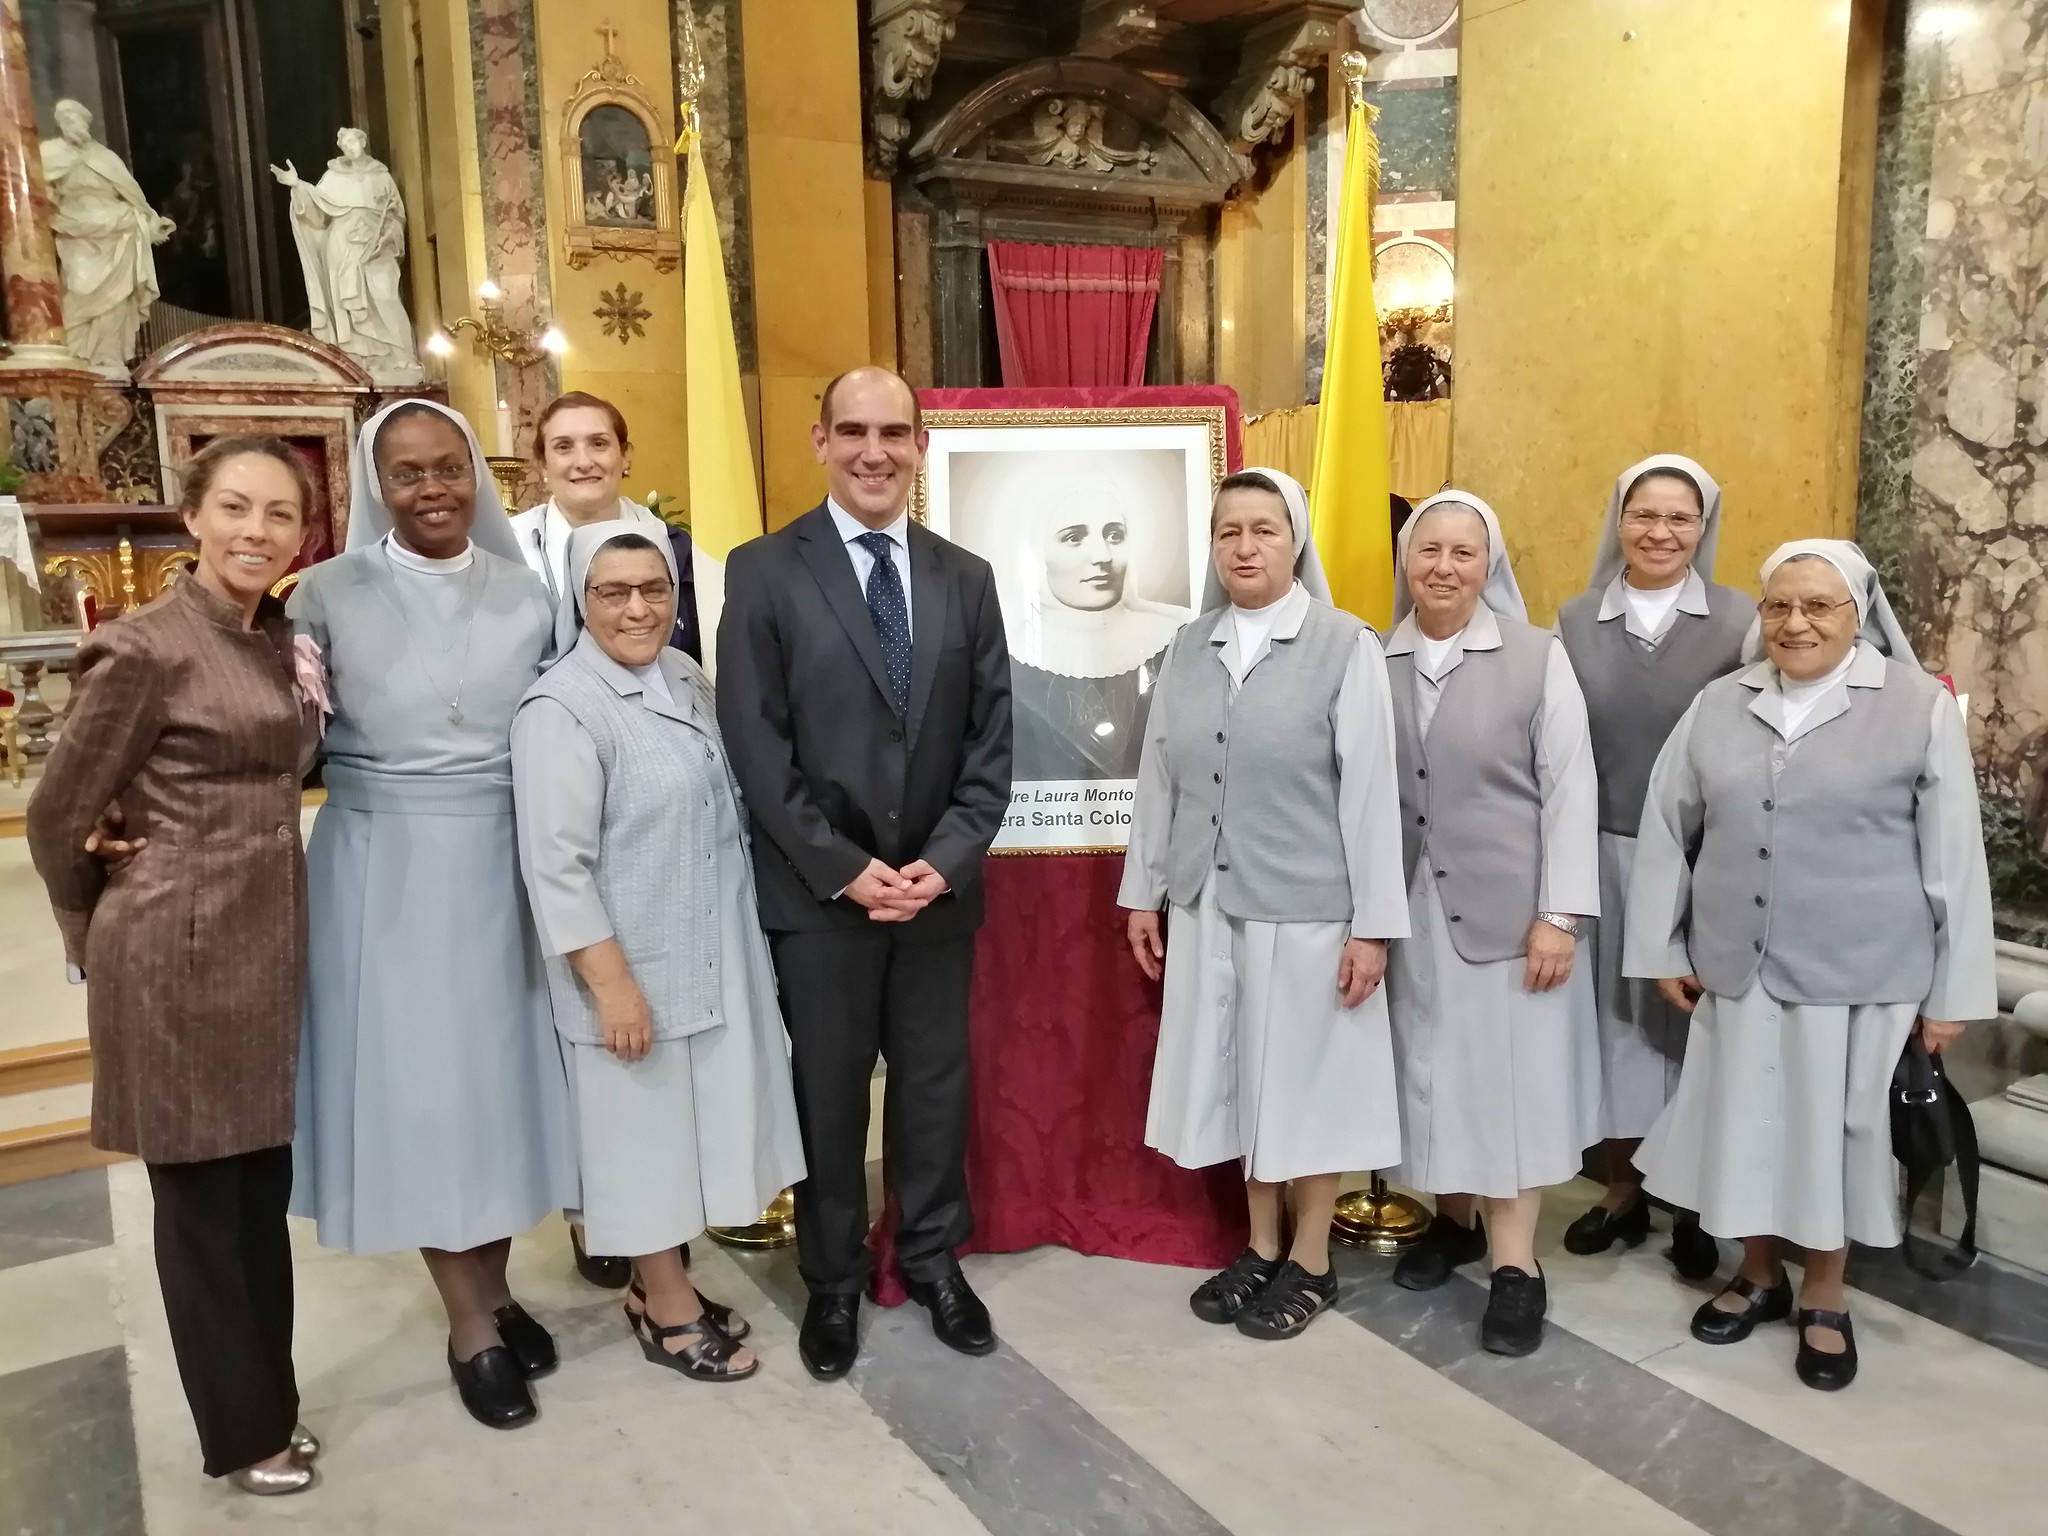 La Embajada de Colombia ante la Santa Sede conmemoró la Fiesta de Santa Laura Montoya